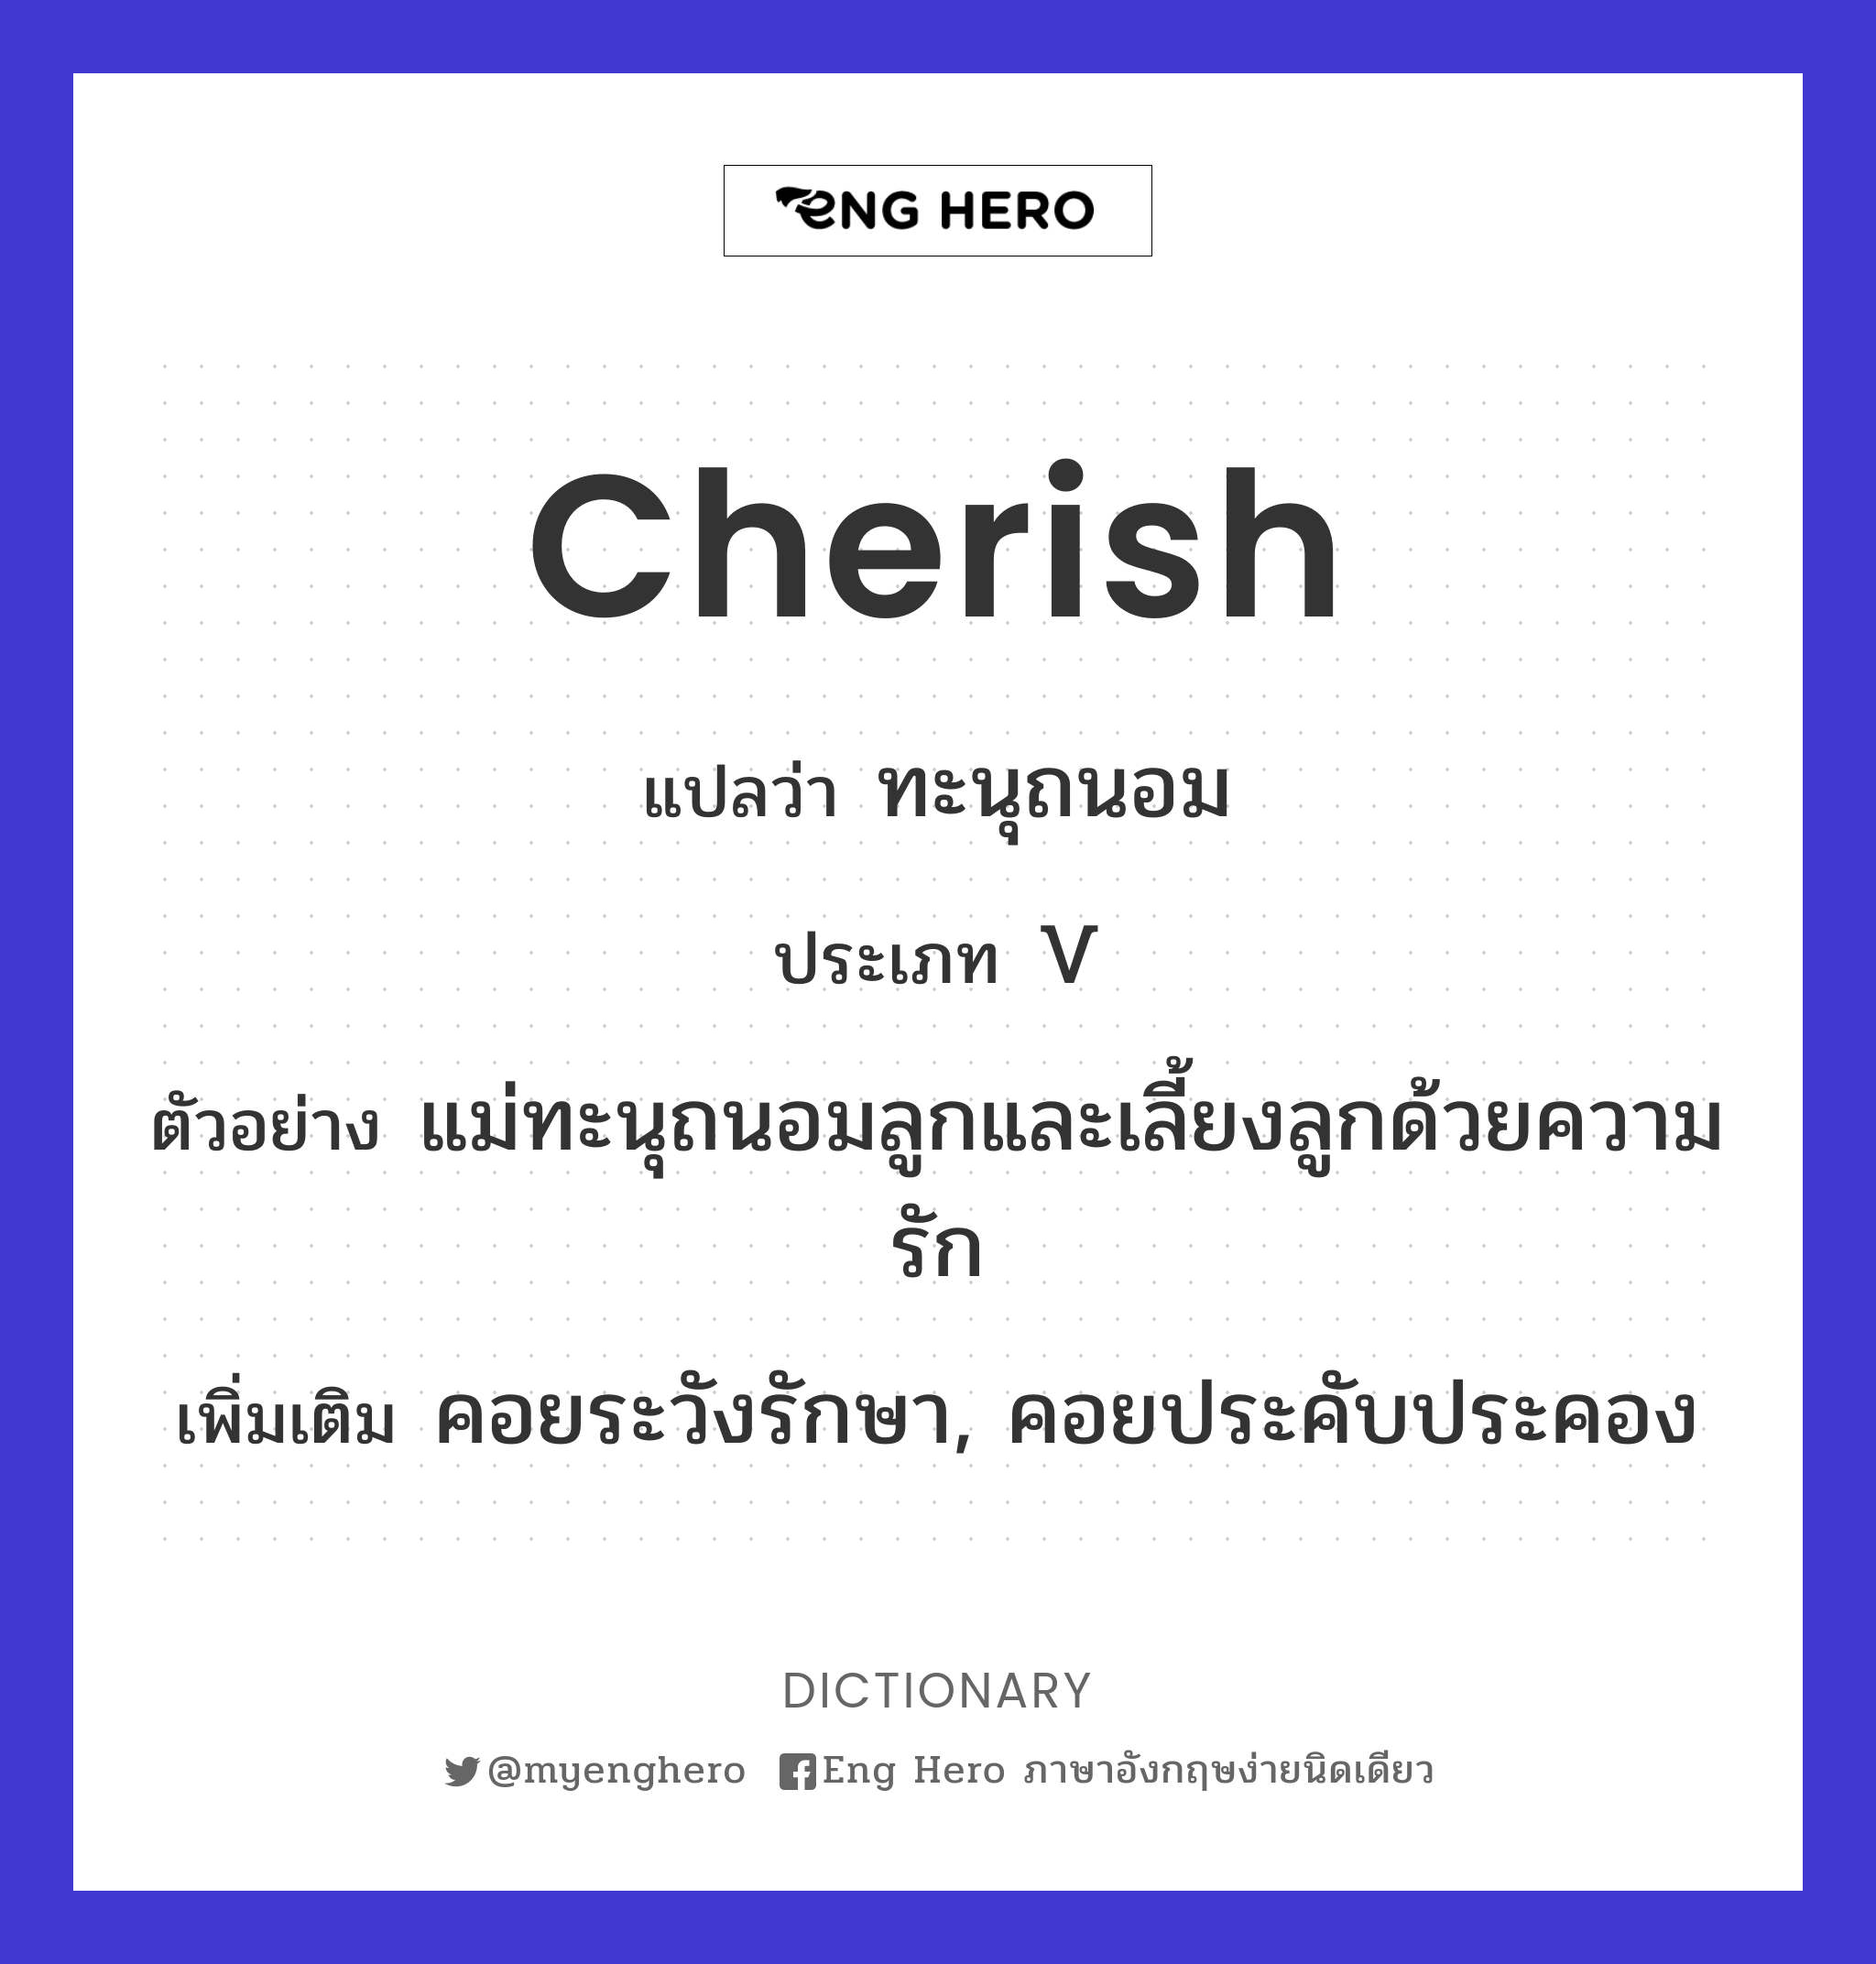 cherish